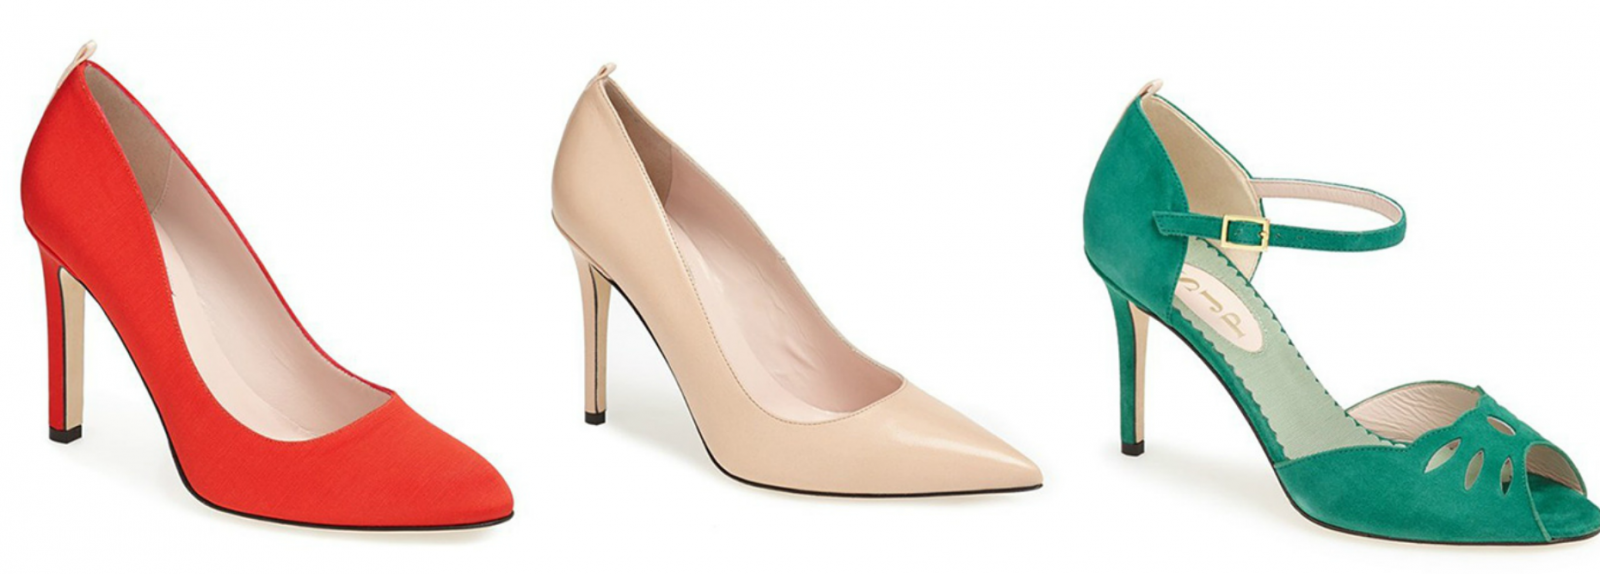 blog de moda | moda | compras | sapatos | Sarah Jessica Parker para a Nordstrom | coleção de sapatos | novidades de sapatos